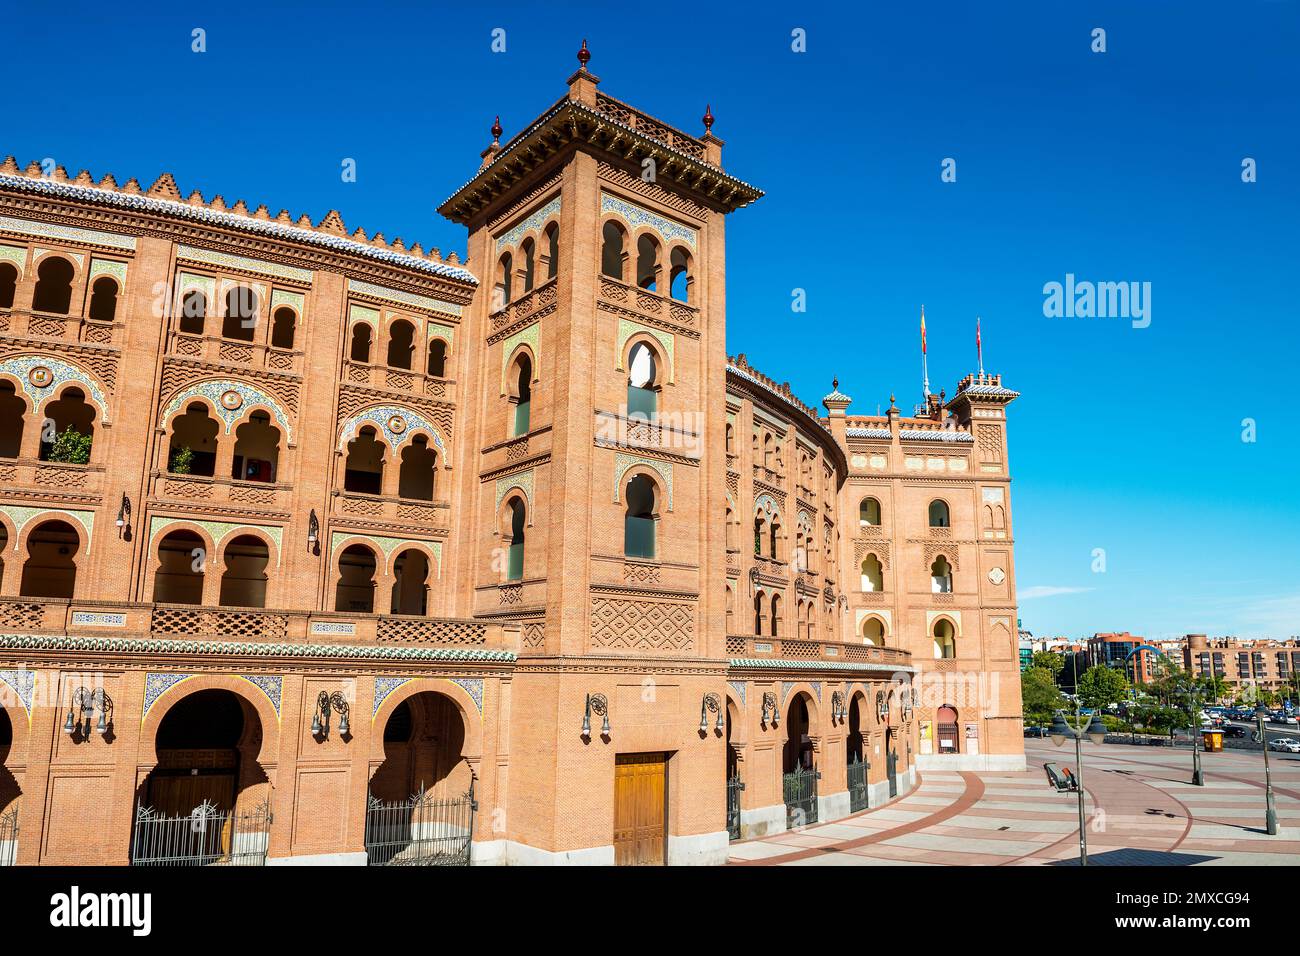 Les Arènes de Las Ventas, arènes de Madrid, Espagne, Europe Banque D'Images